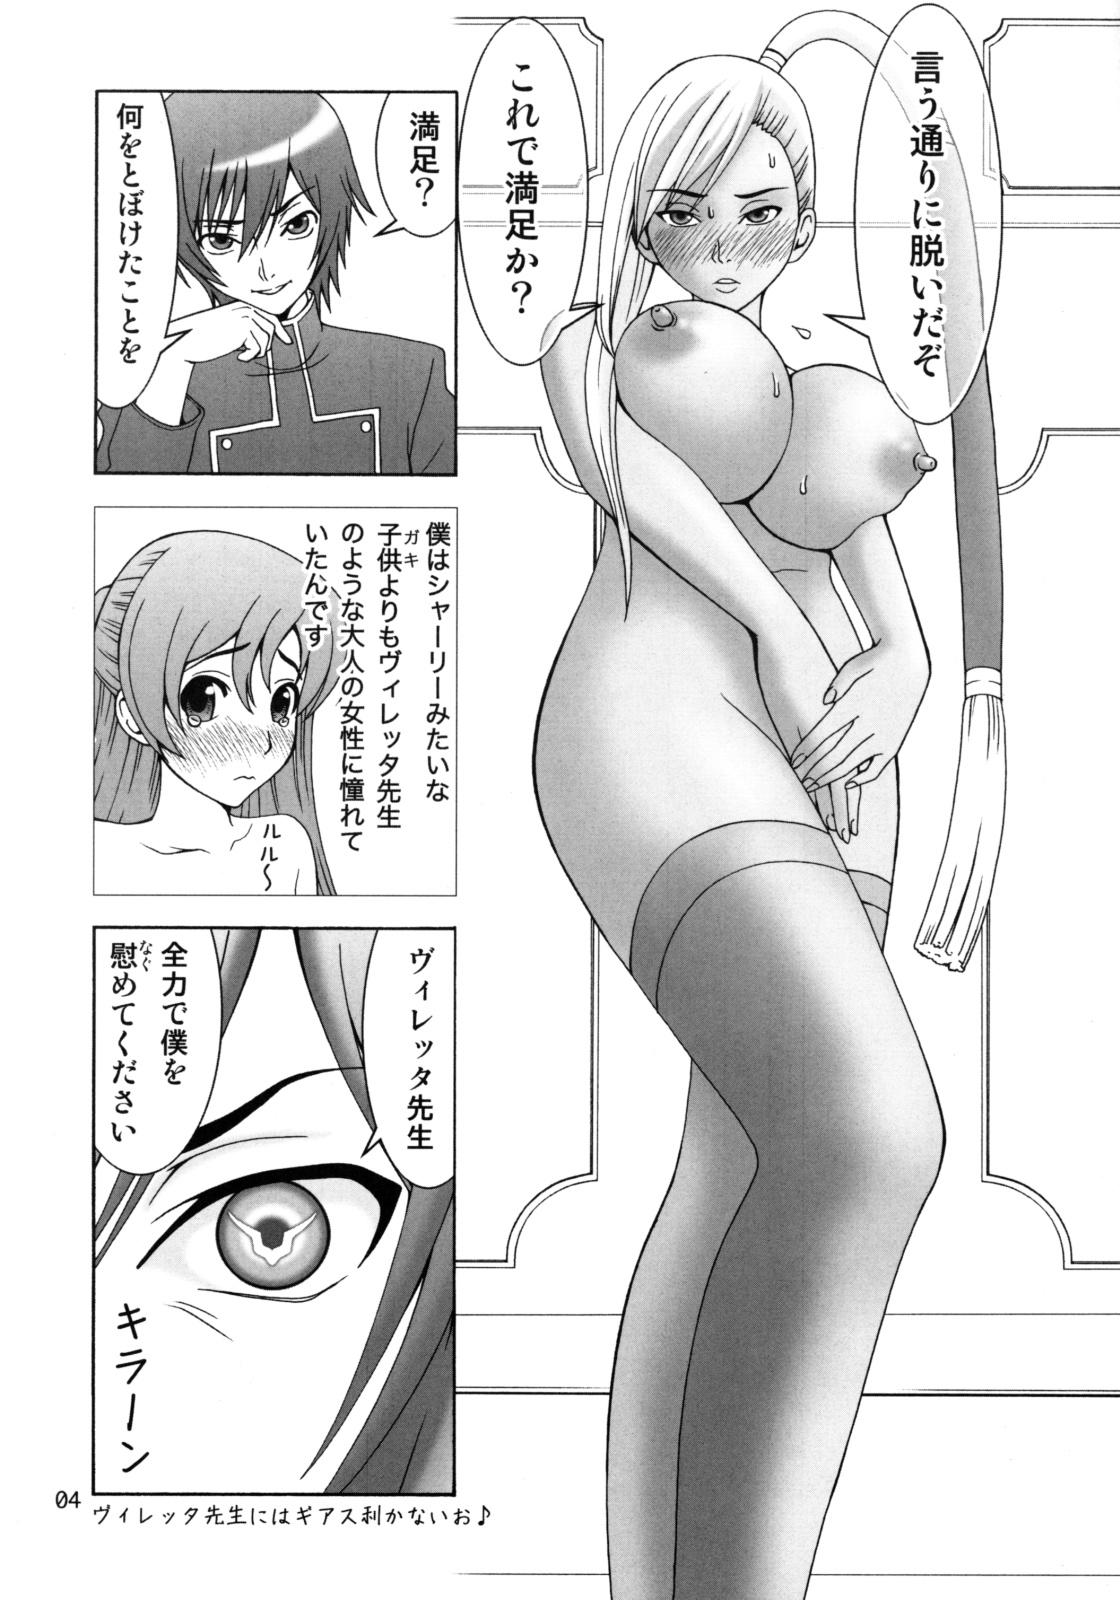 Ffm Villetta-sensei ga Ushiro kara Mae kara Yarareteru! - Code geass Horny Sluts - Page 3